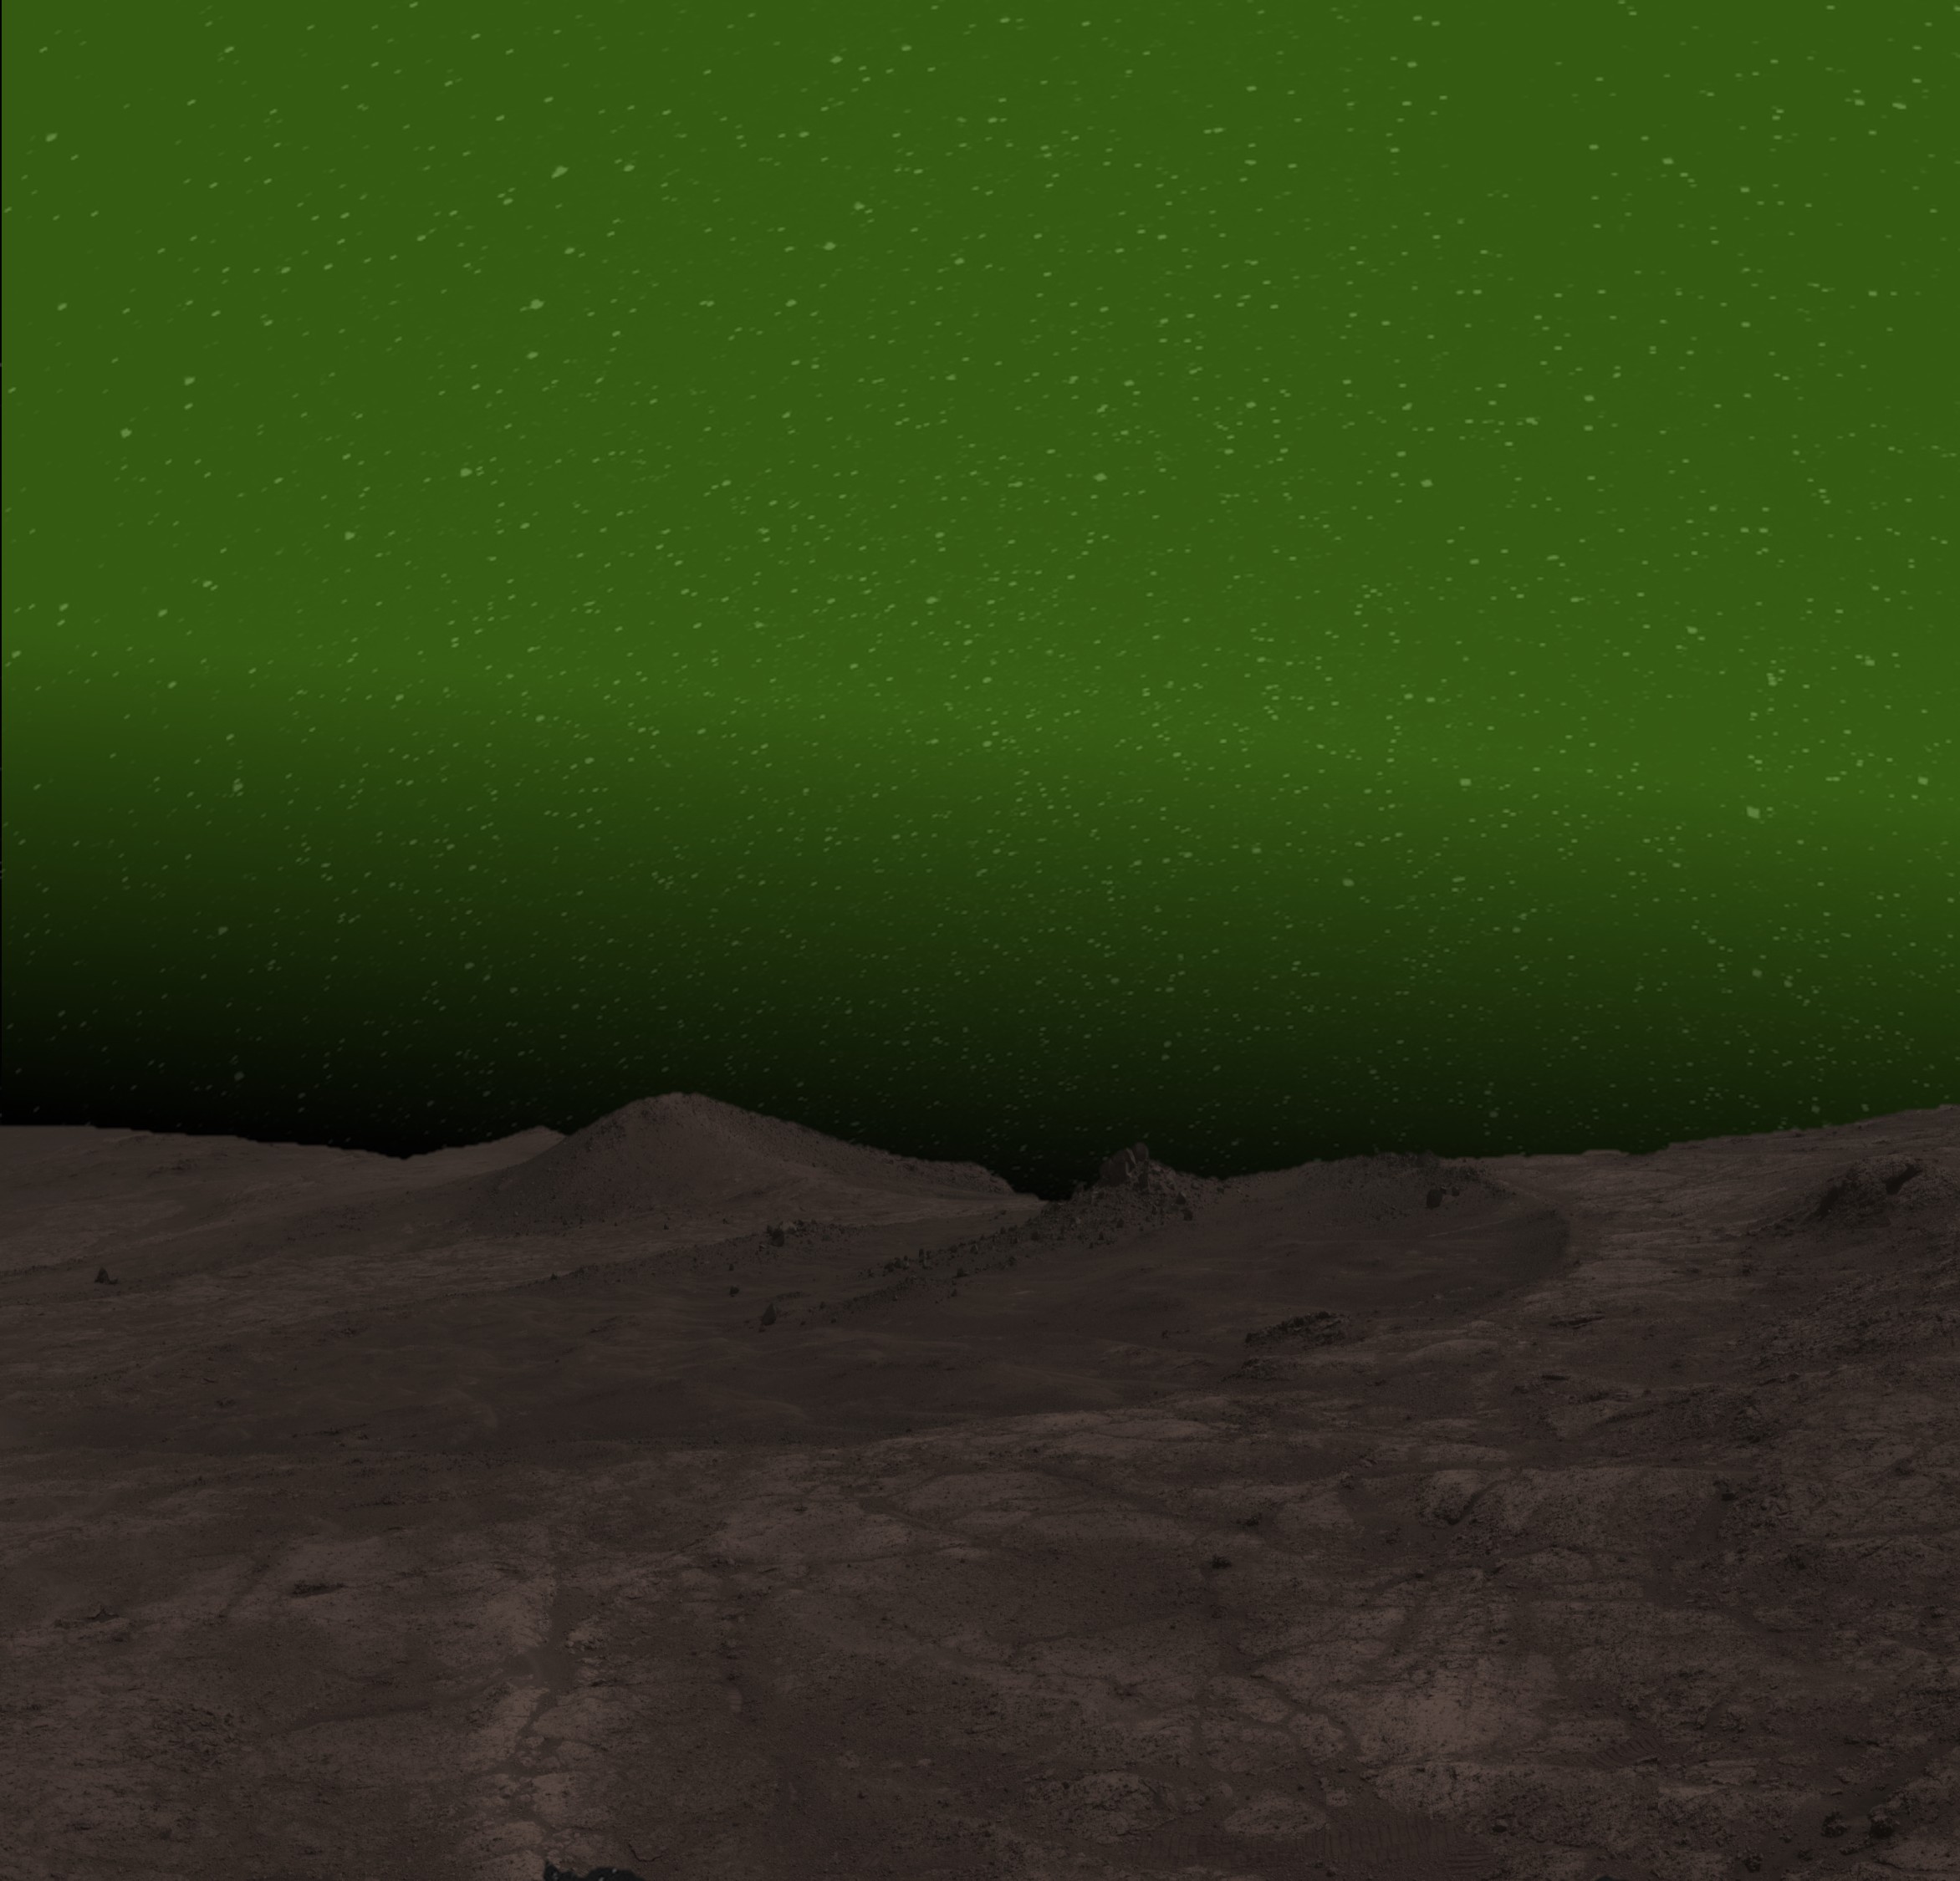 Це зображення показує враження художника того, як може виглядати нічне сяйво в оптичному діапазоні в полярних регіонах Марса вночі